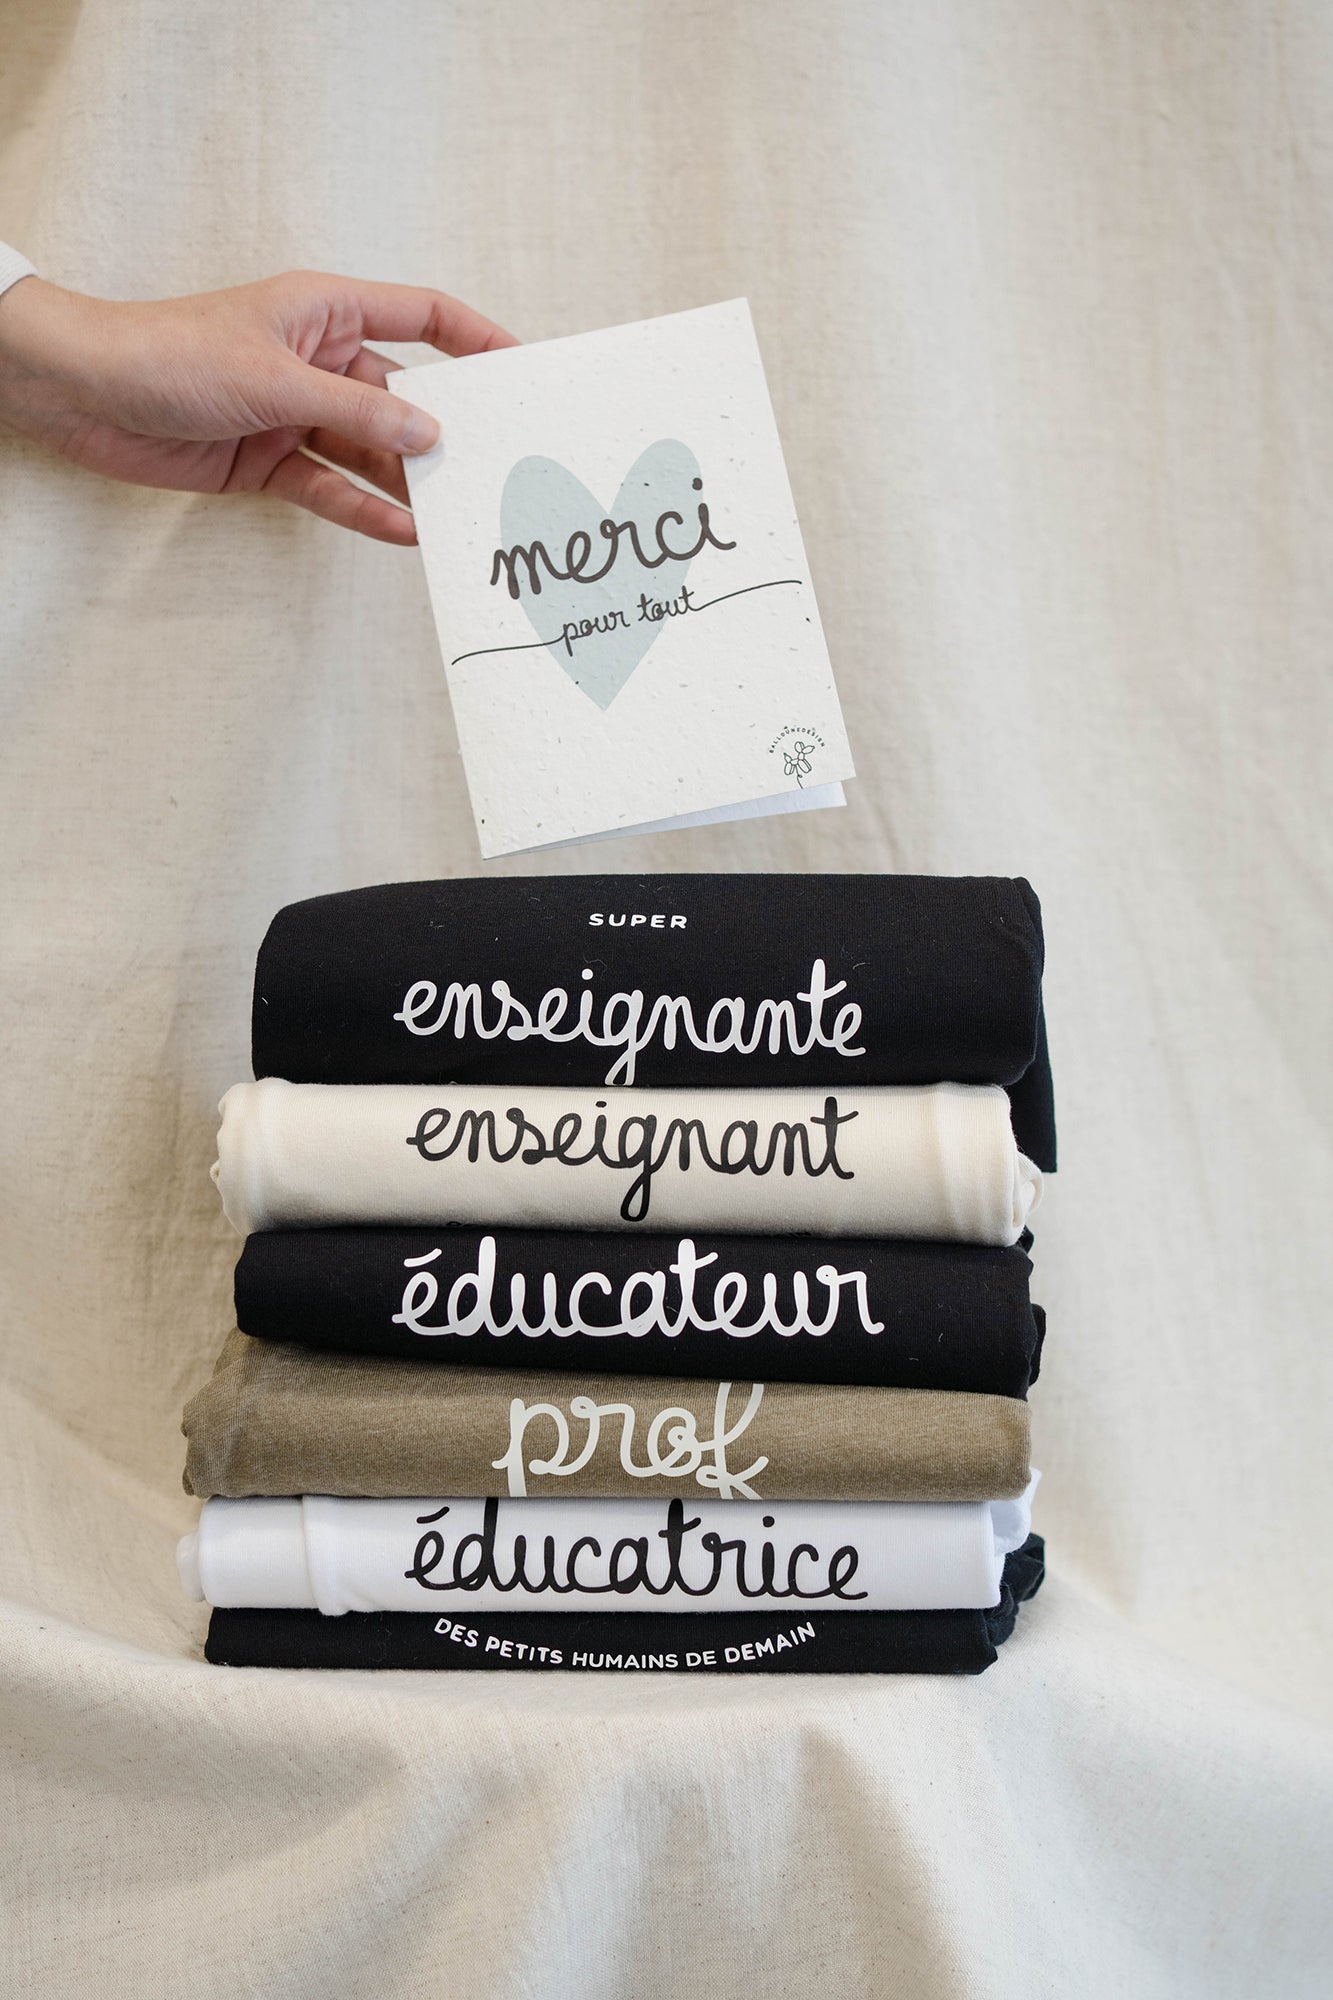 Design "super prof/enseignant/éducateur" - t-shirt et crewneck Adulte